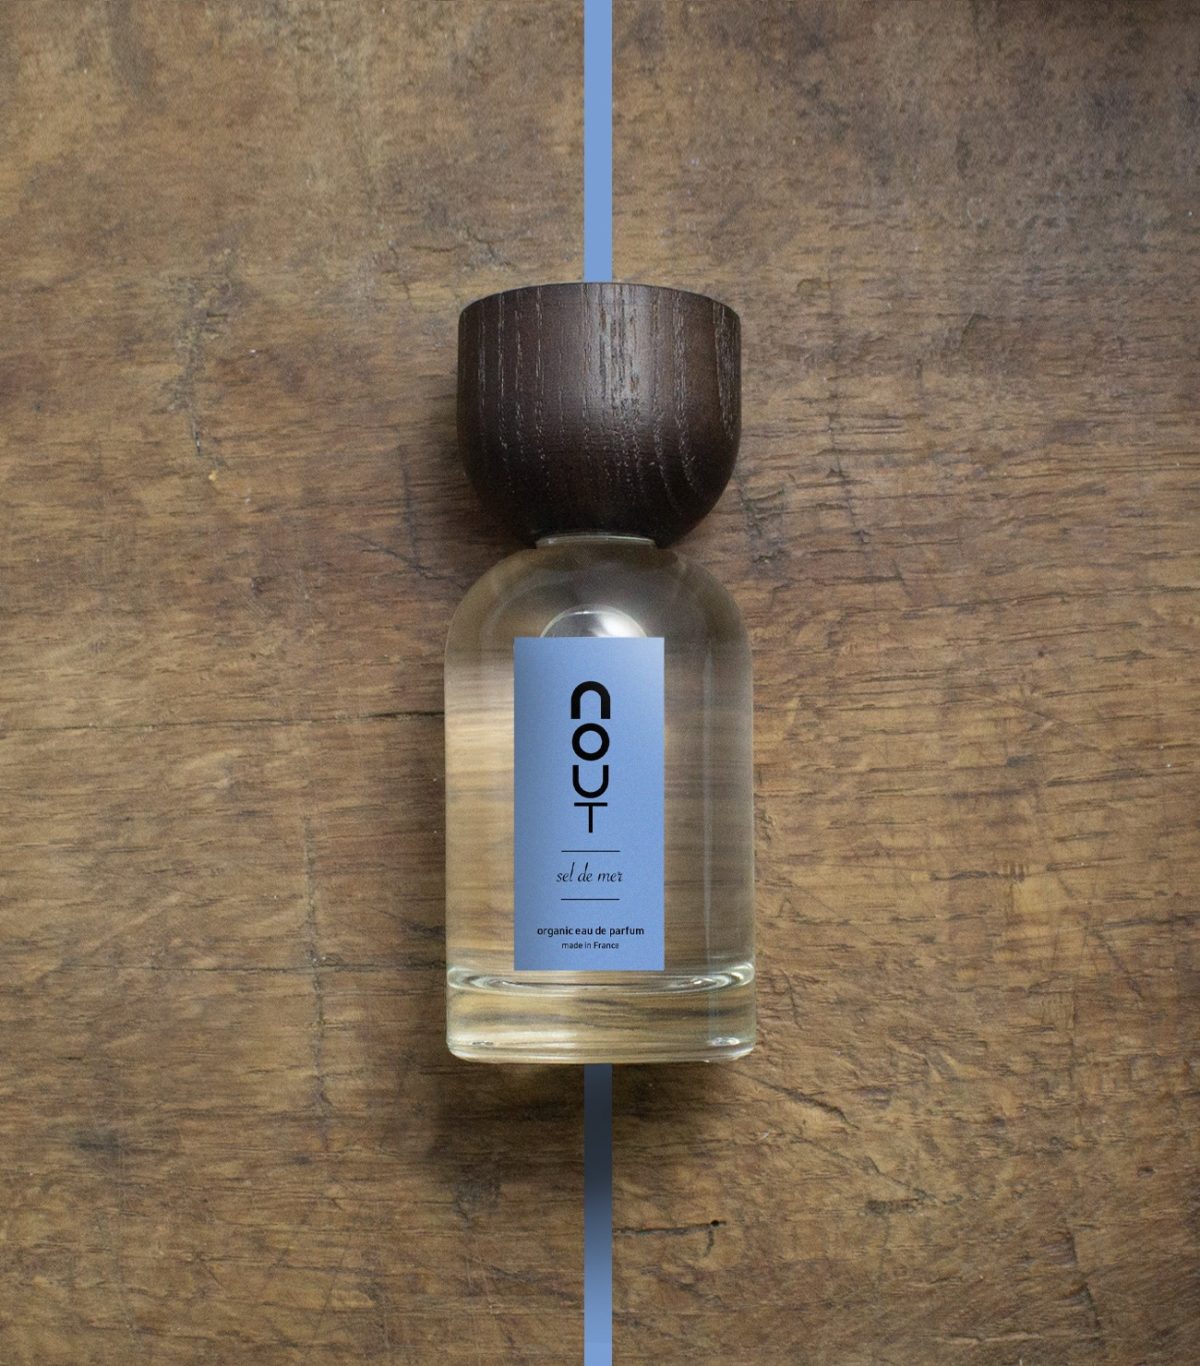 sel de mer (100ml) - Nout parfum